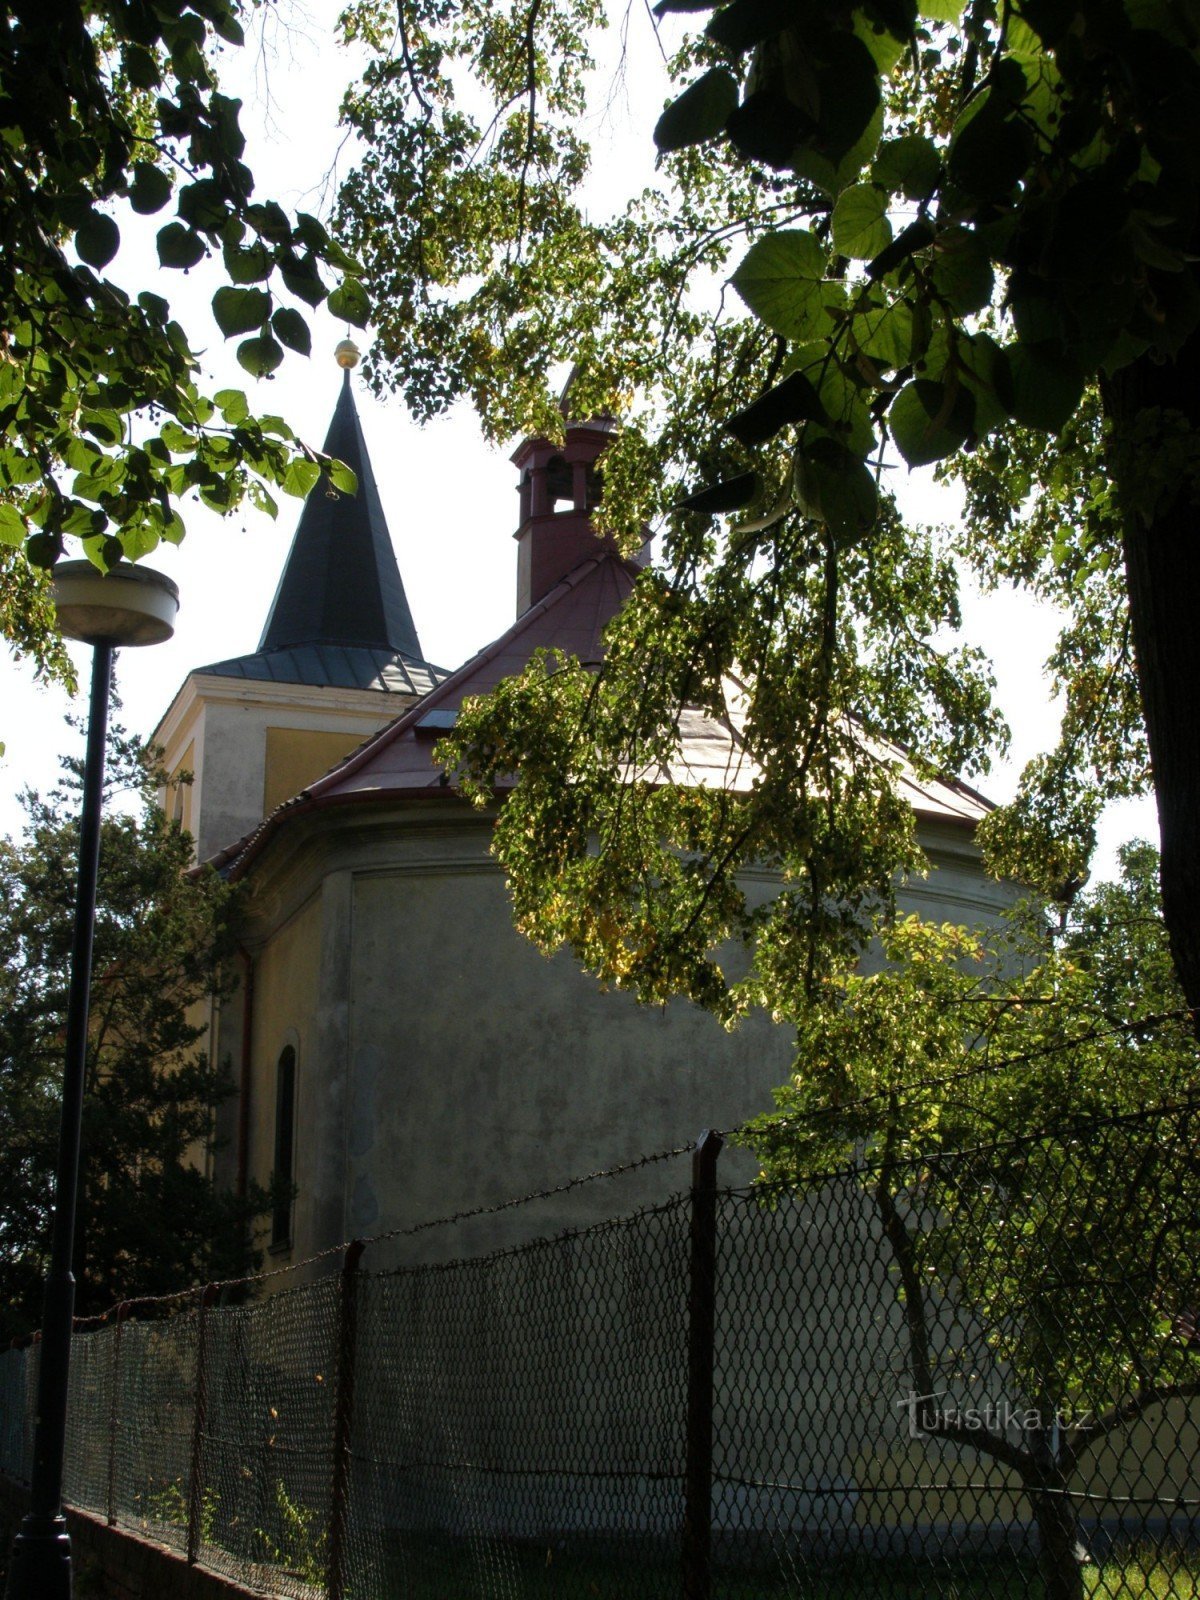 Plotiště nad Labem - Kościół św. Piotr